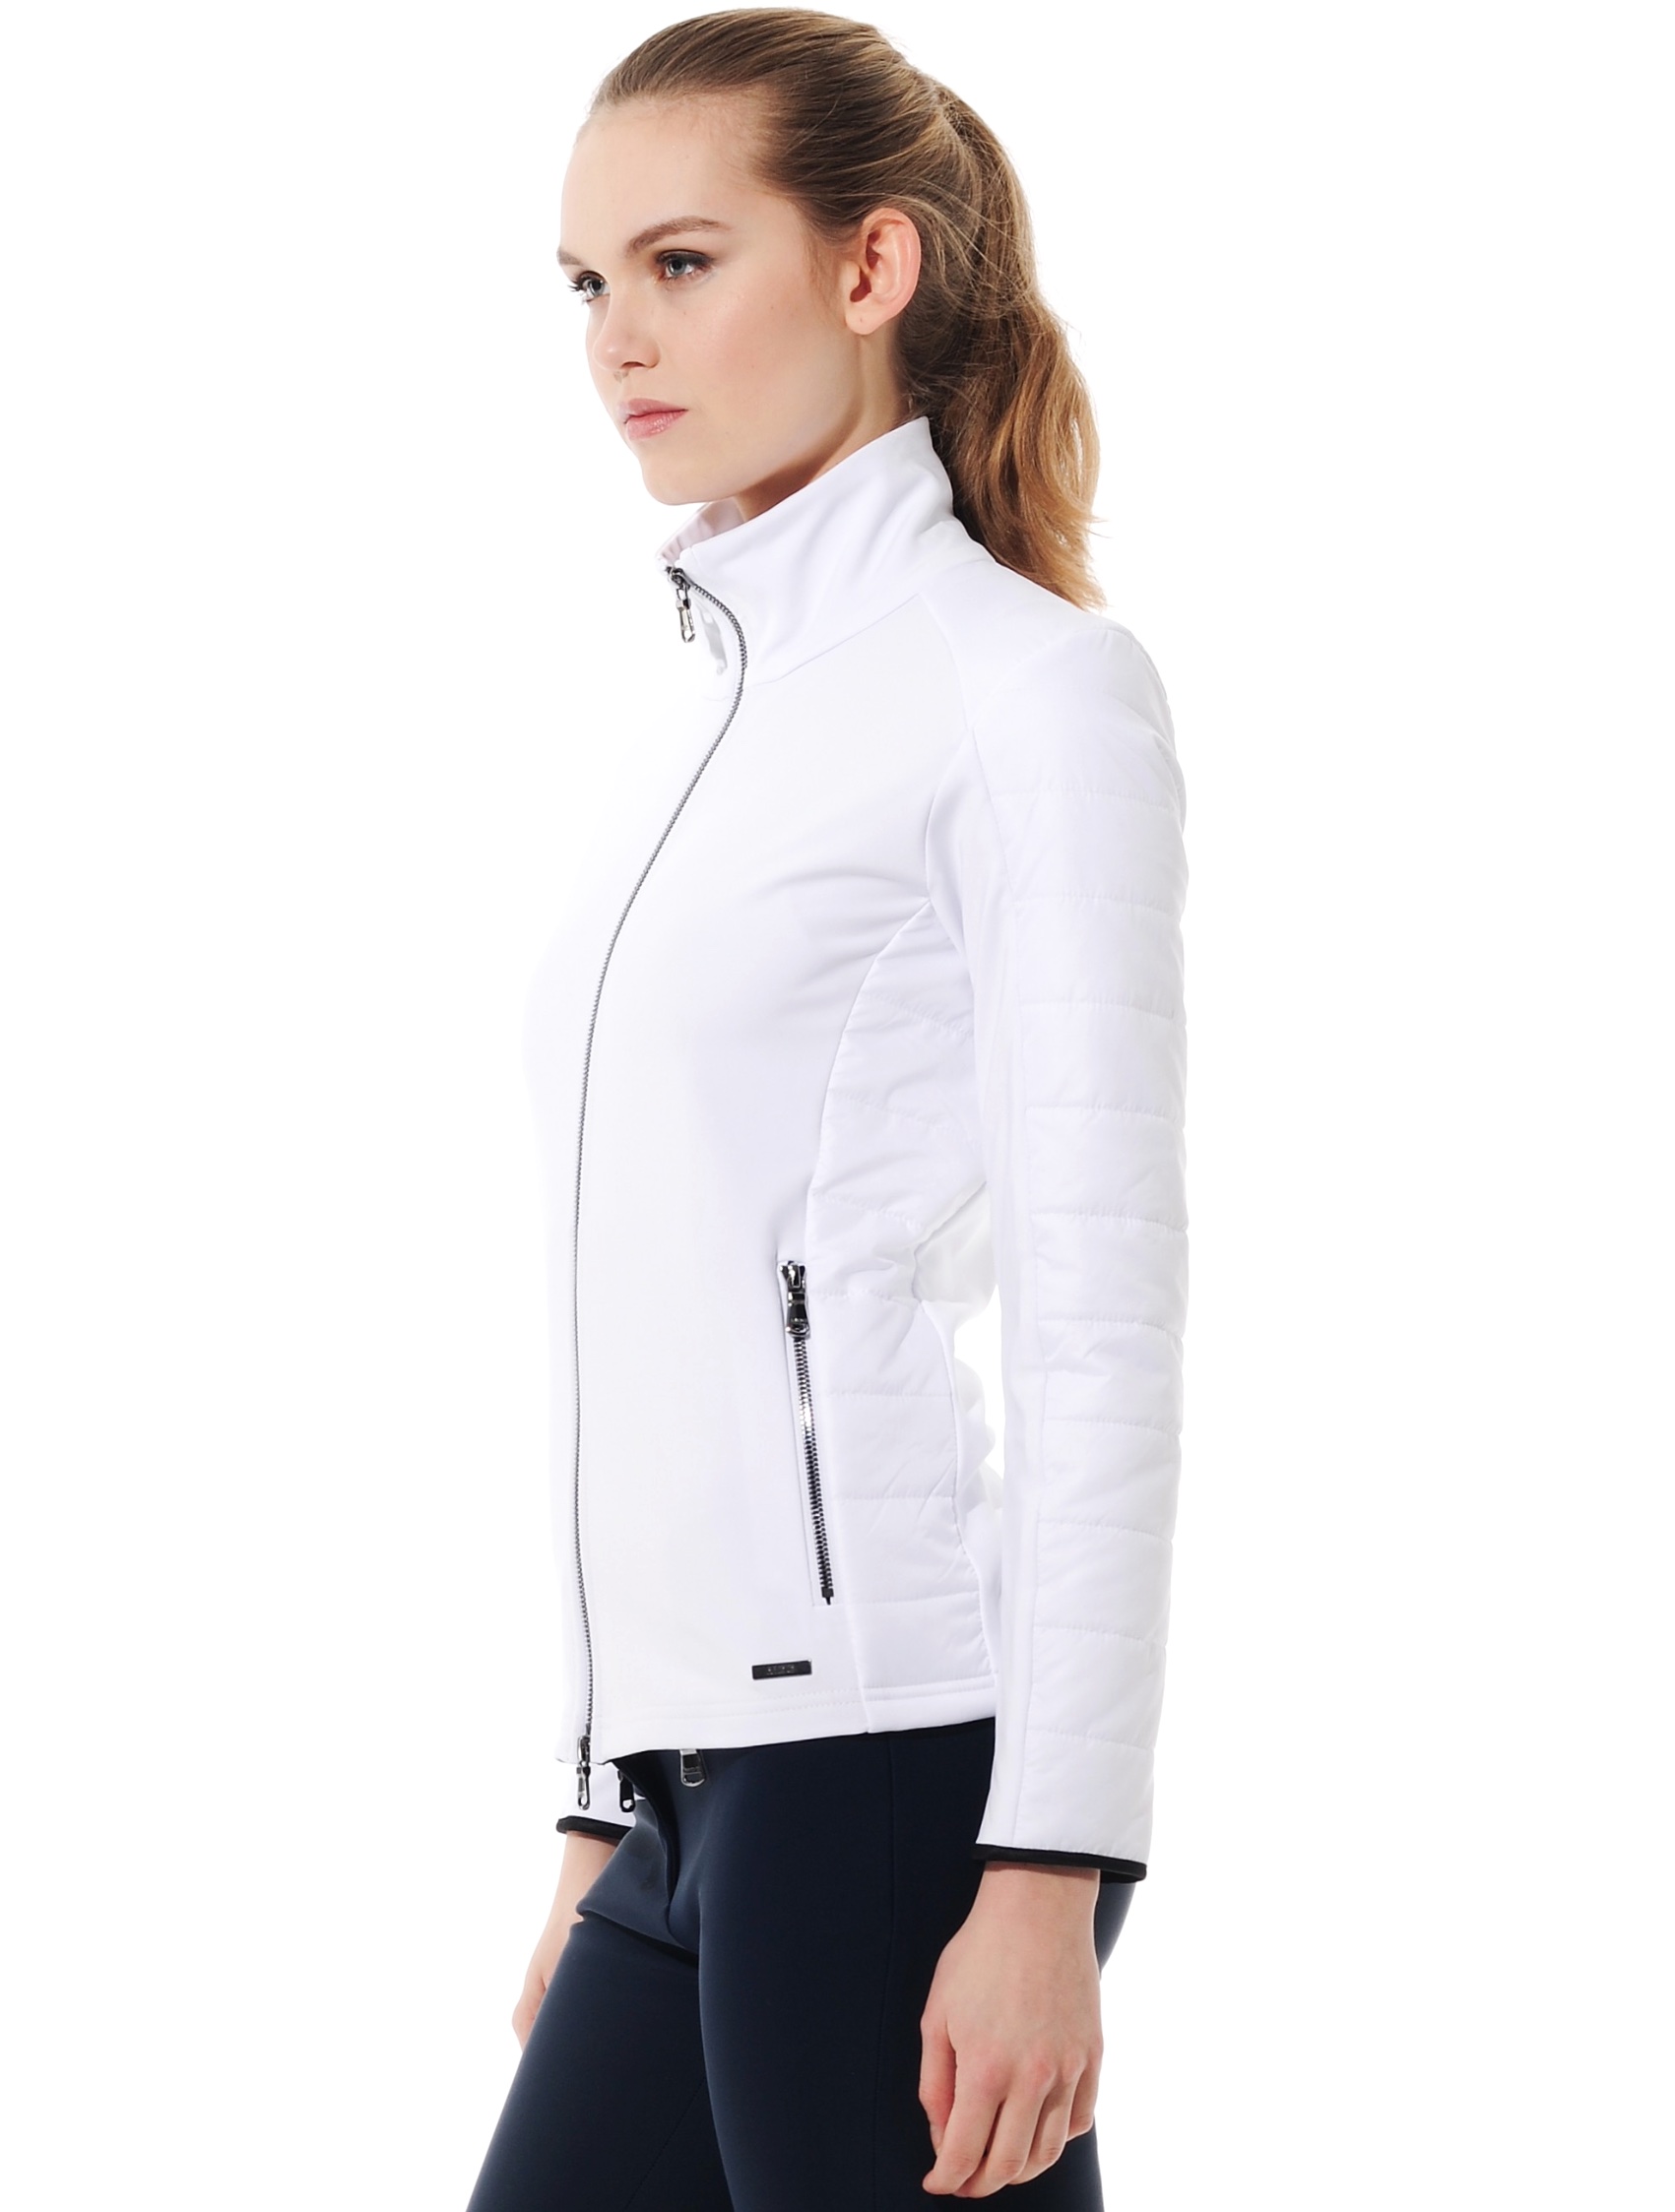 Softex stretch jacket white 